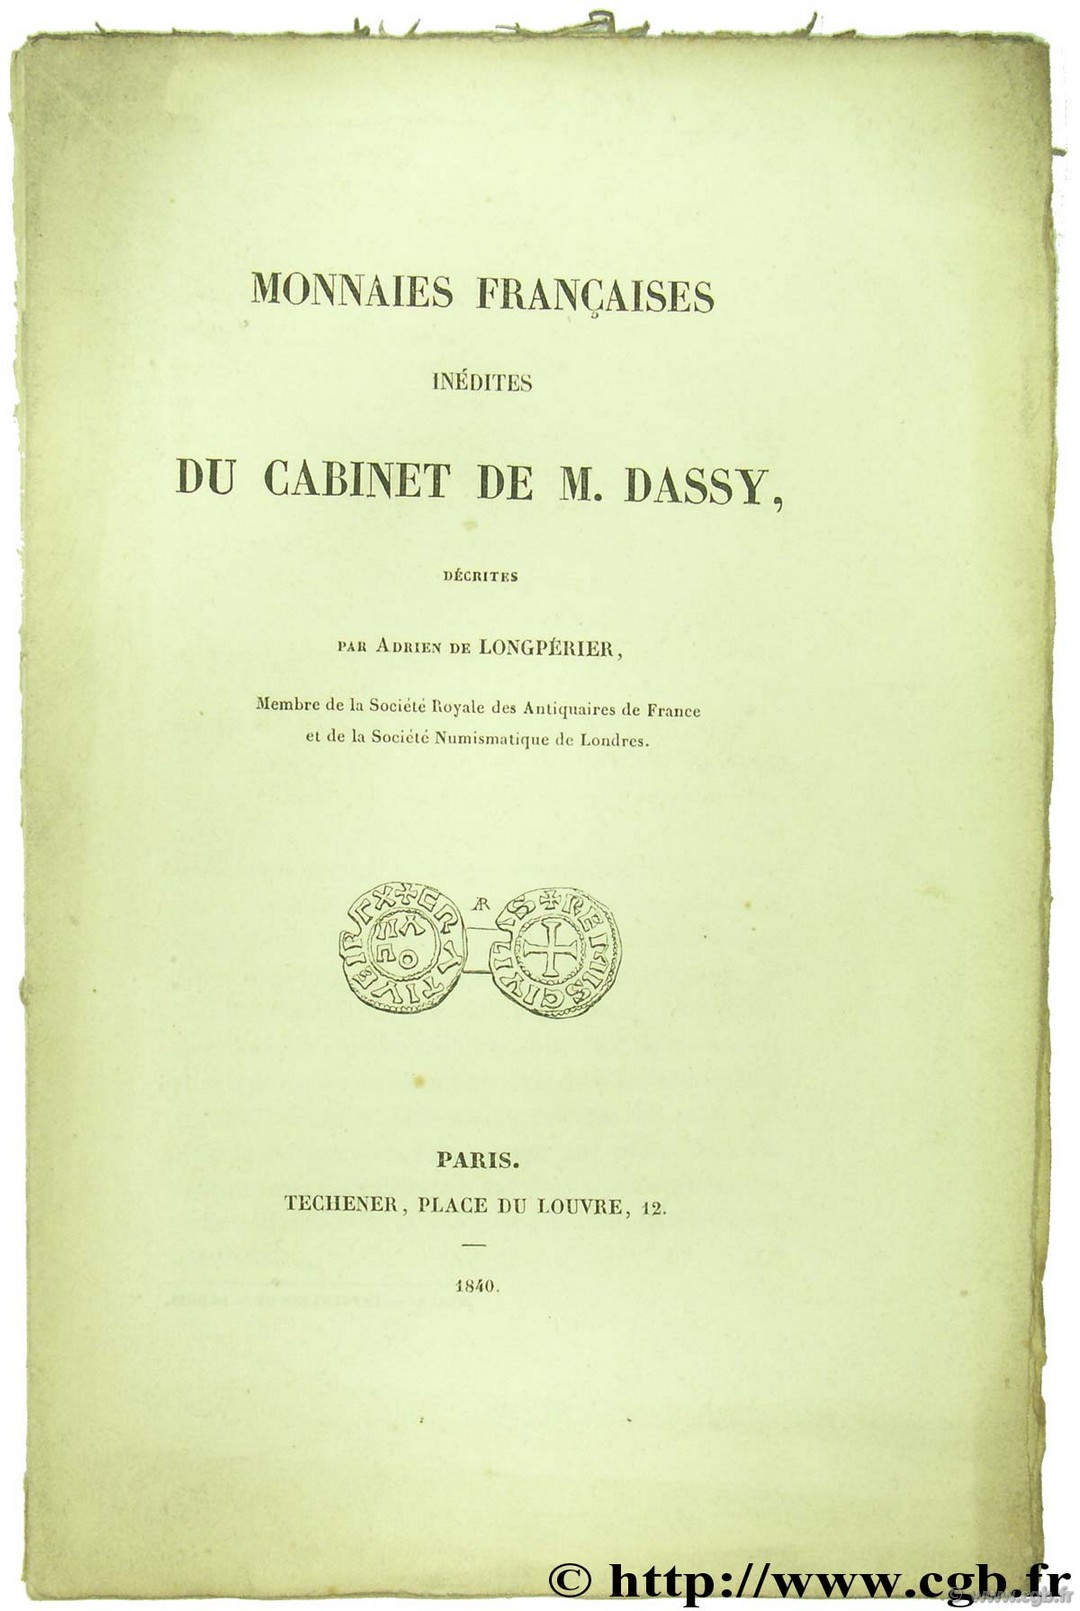 Monnaies françaises inédites du cabinet de M. Dassy DE LONGPÉRIER A.